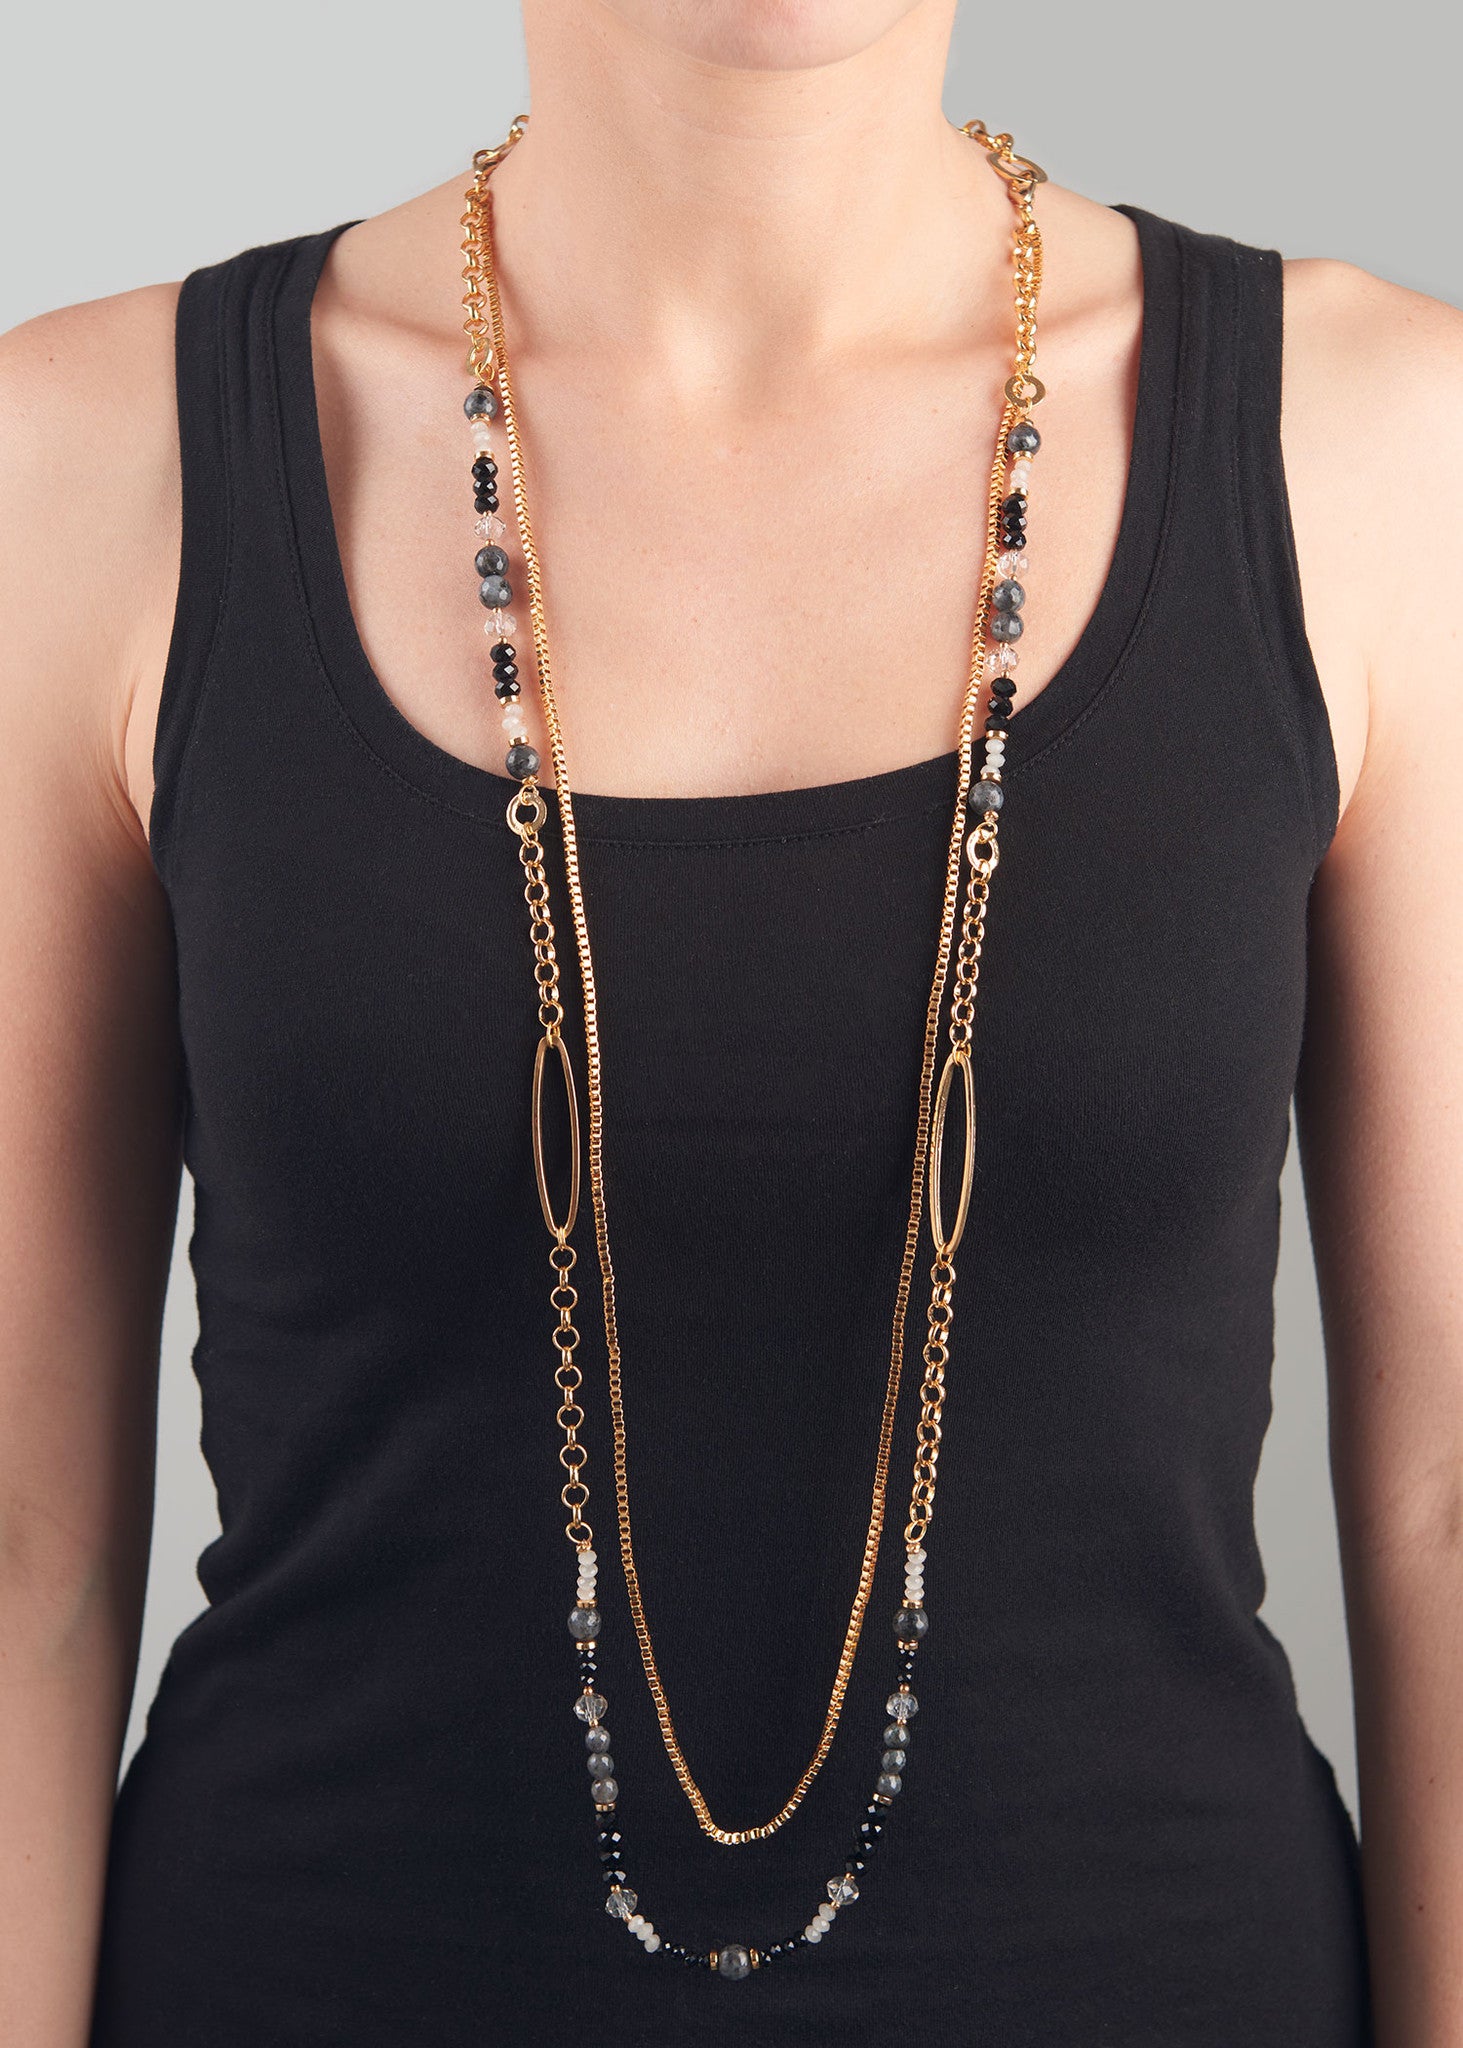 Madelyn Black Versatile Necklace